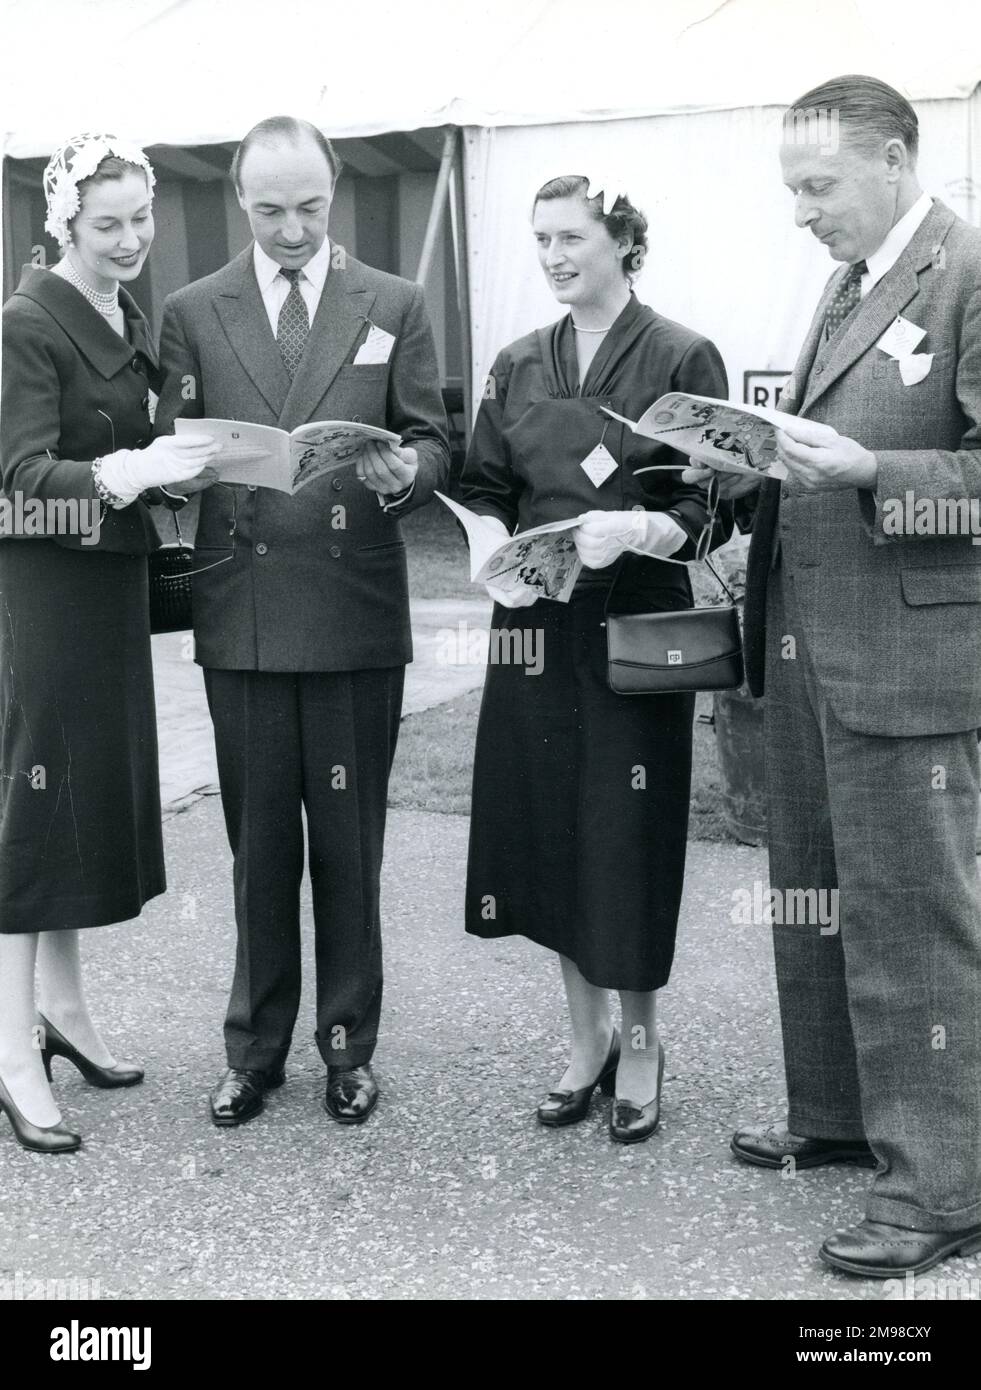 Mr. Und Mrs. J.D. Profumo (Miss Valerie Hobson) und Herr und Frau Watkinson, Ministerin für Verkehr und Zivilluftfahrt, auf der 1956. Gartenparty der Royal Aeronautical Society in Wisley am 15. Juli. Stockfoto